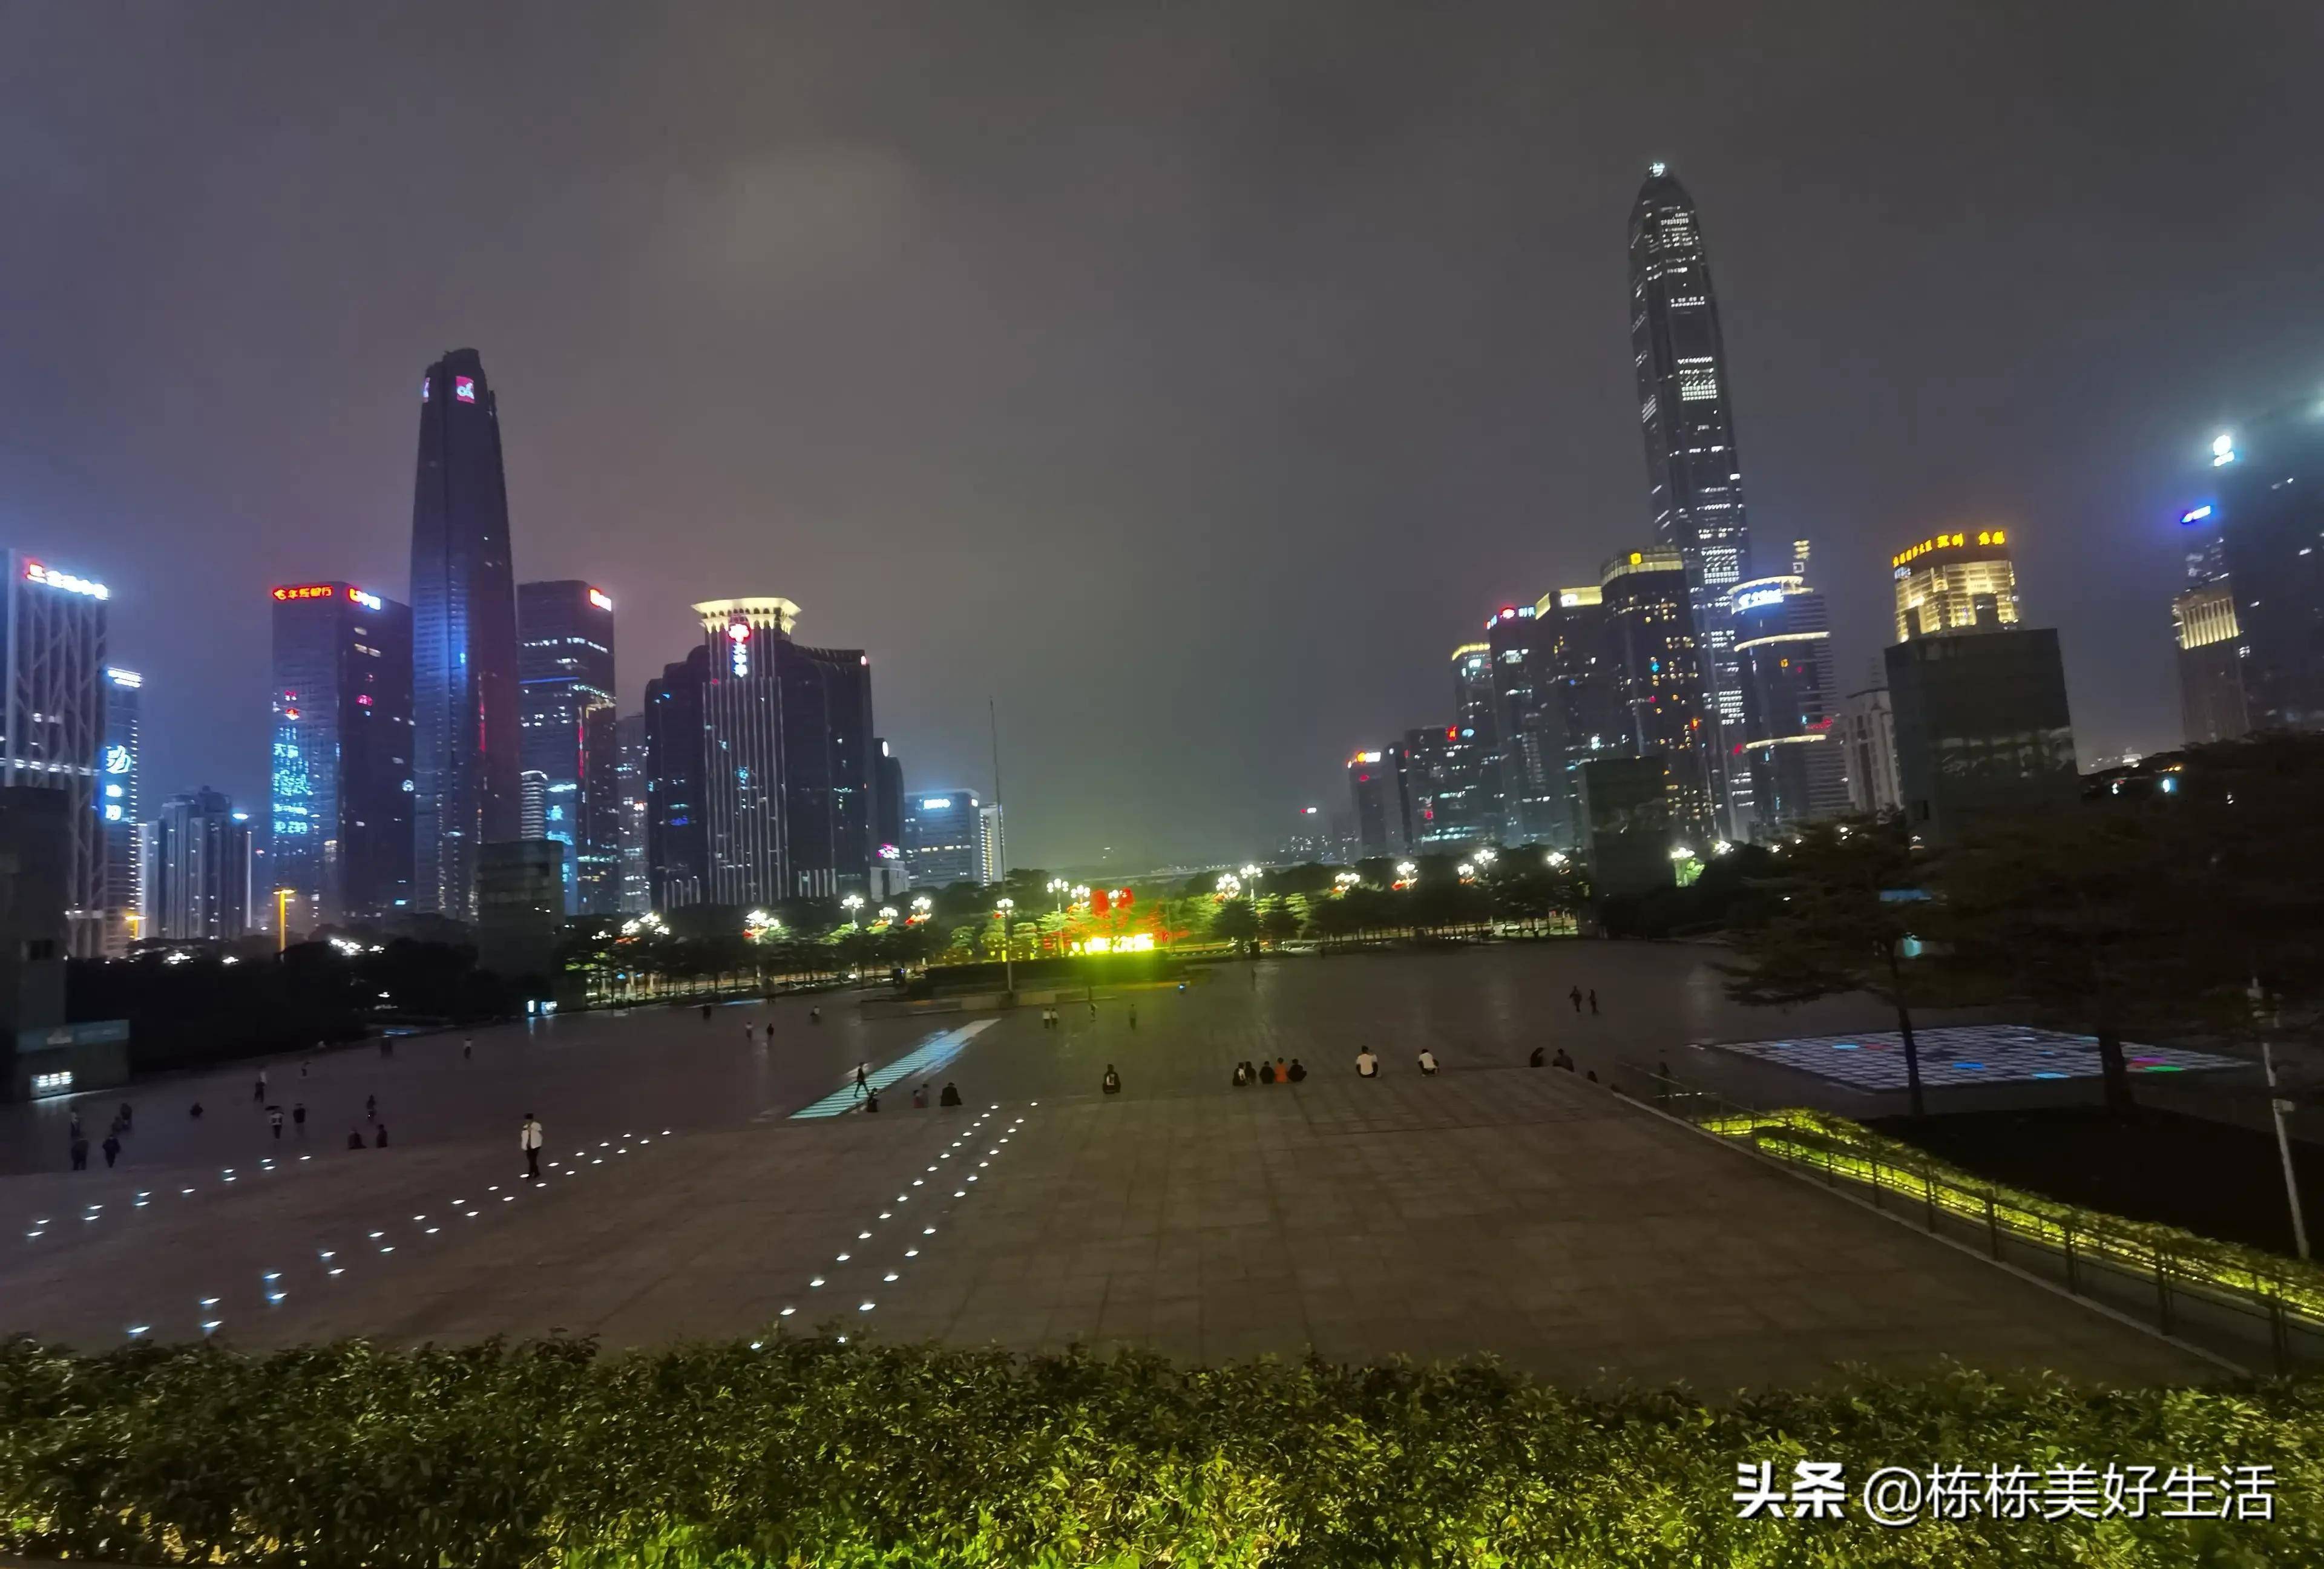 深圳市民广场的夜晚,灯光闪烁,人流攒动